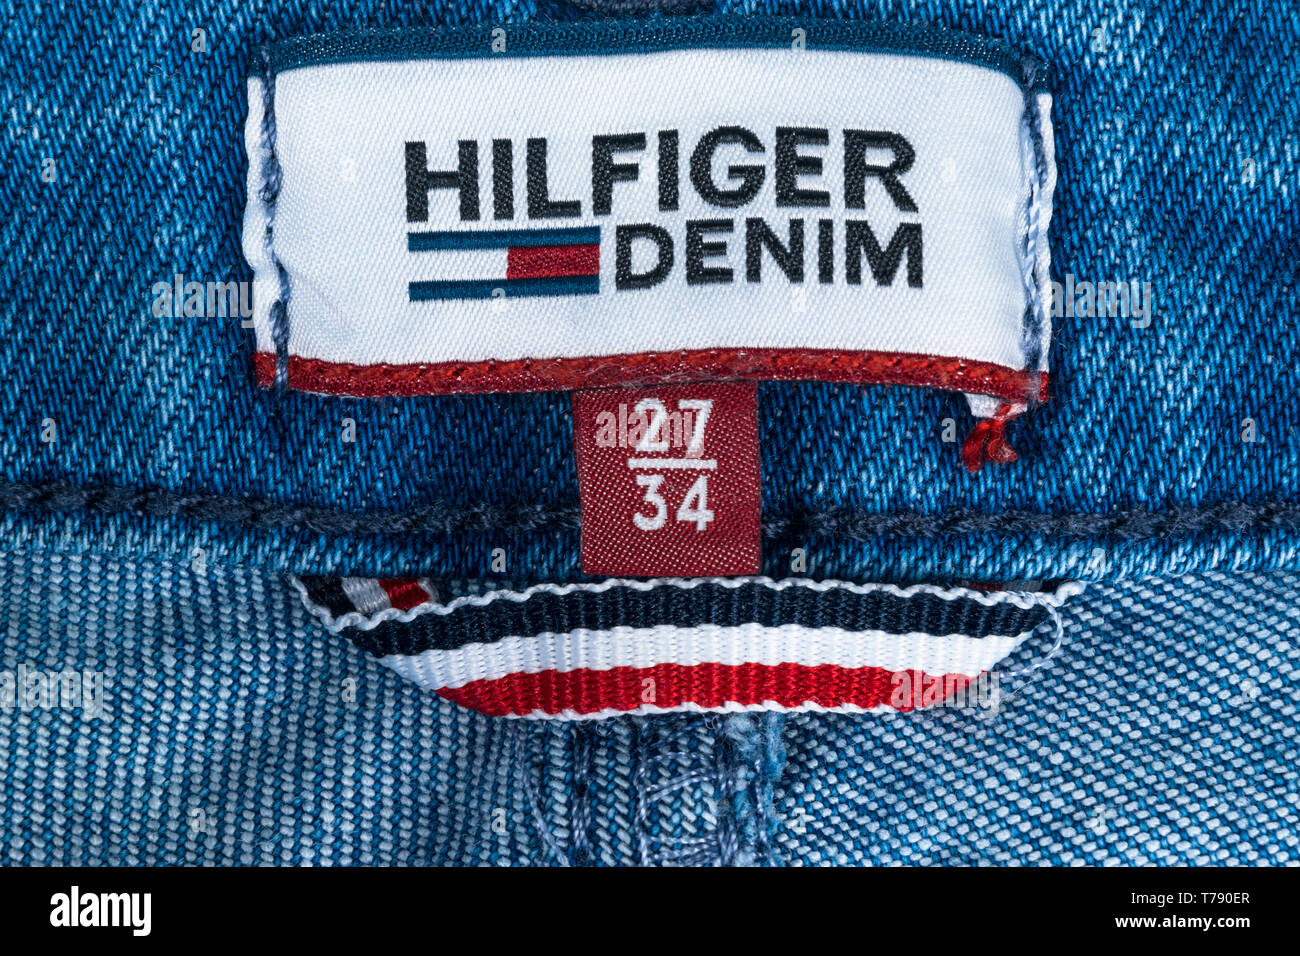 Sankt-Petersburg, Russland, 9. Oktober 2017: Nahaufnahme von Tommy Hilfiger  Label auf blauen Jeans. Tommy Hilfiger ist Lifestyle Marke. Hilfiger Denim.  Tommy Hil Stockfotografie - Alamy